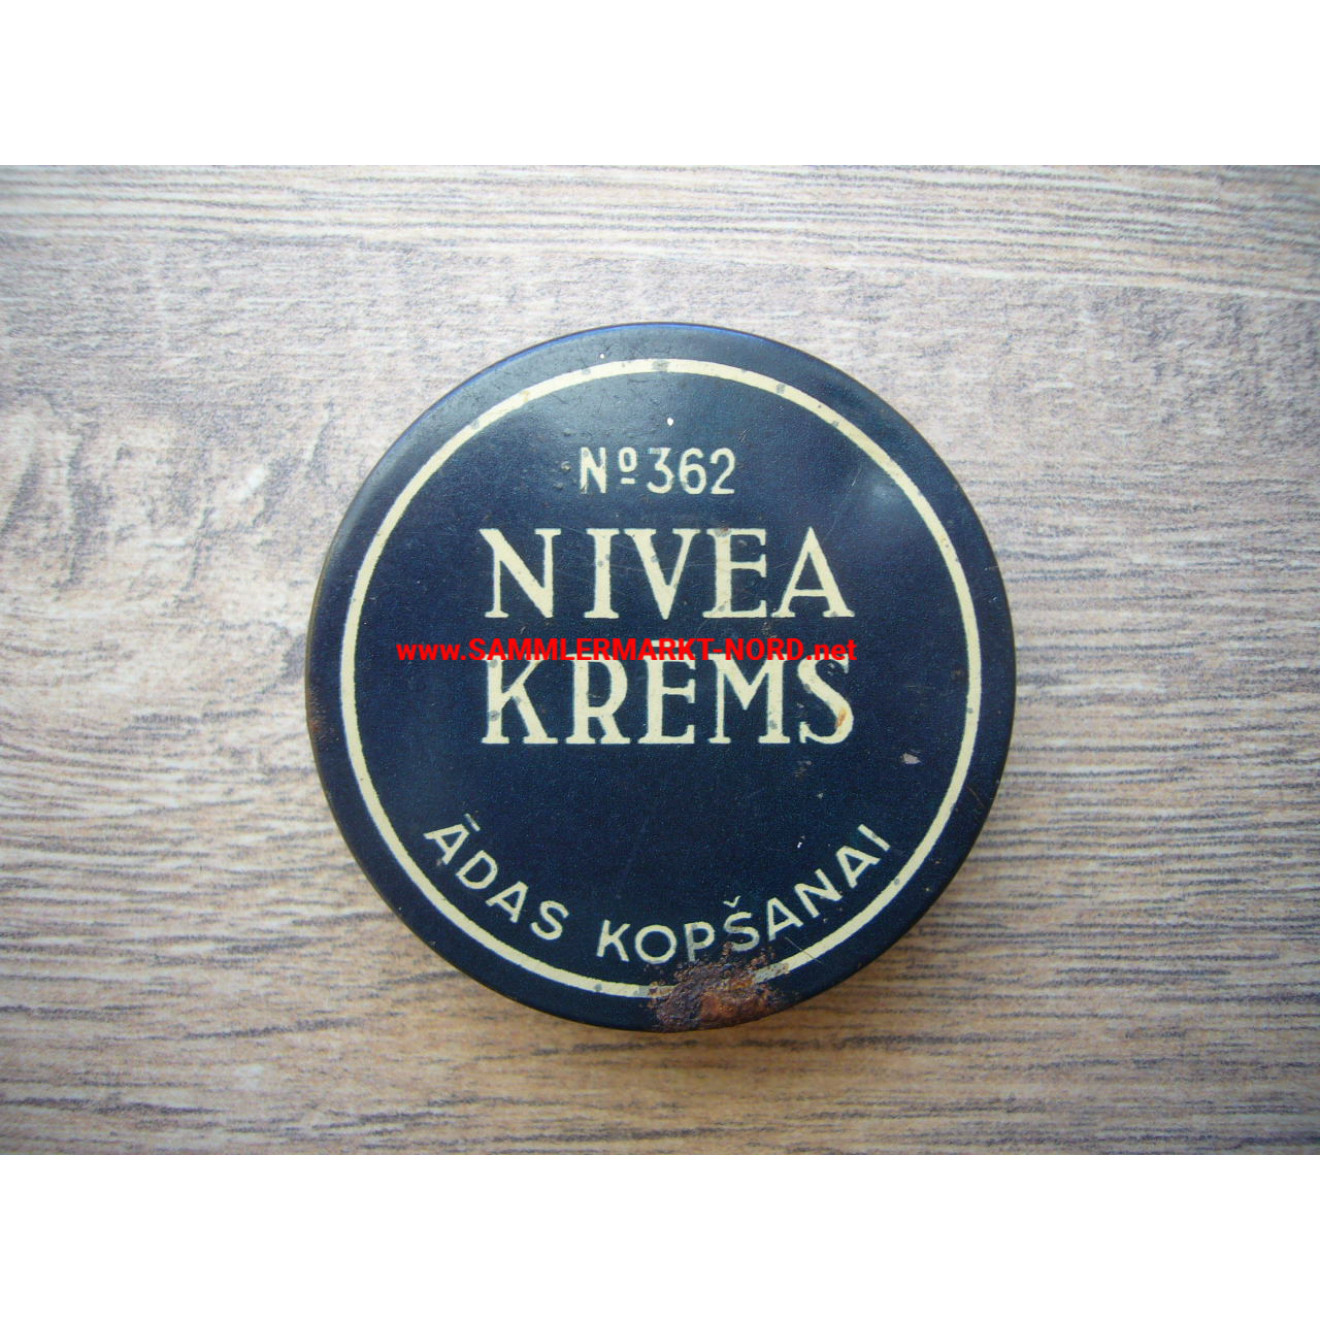 WH persönliche Ausrüstung - NIVEA Creme - lettische Dose